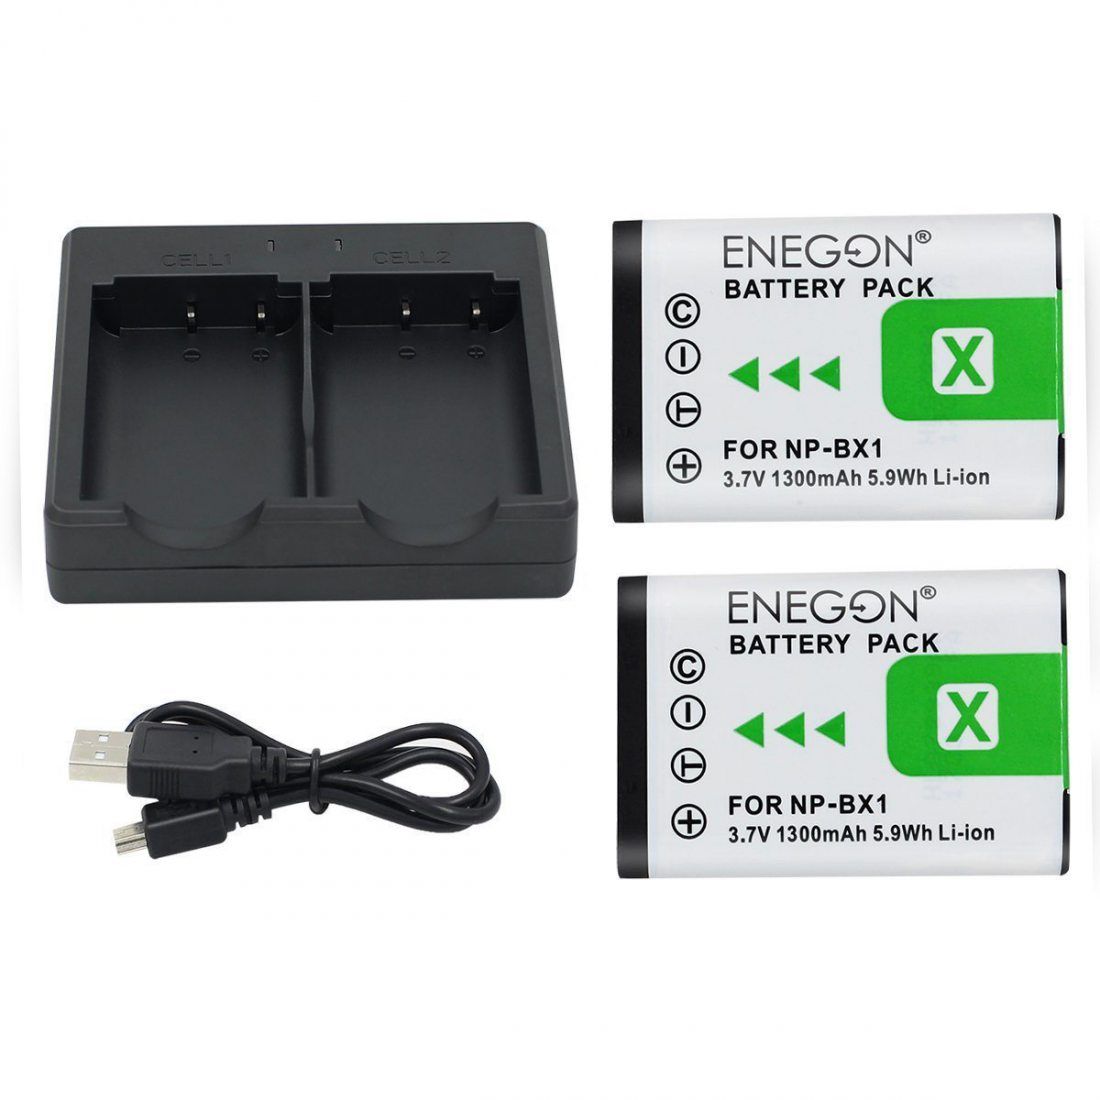 NP-BX1 ENEGON Batterie de Rechange (2 Paquets) et Chargeur Double Rapide pour Sony NP-BX1, NP-BX1 / M8 et Sony Cyber-Shot DSC